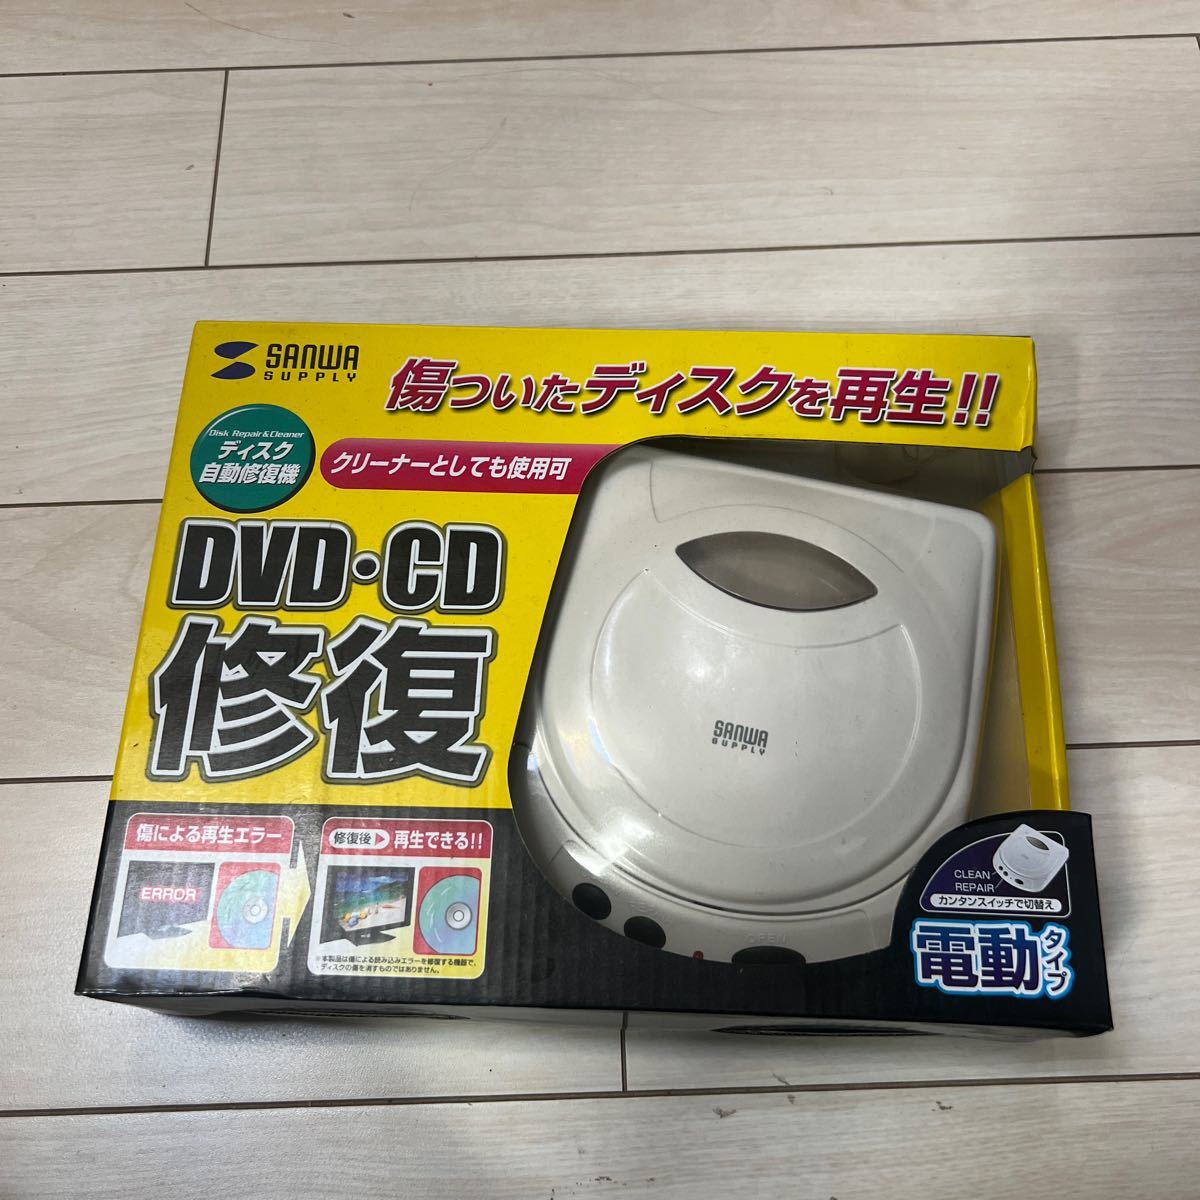 SANWA SUPPLY サンワサプライ ディスク 自動修復機 CD-RE1AT DVD CD修復 電動タイプ_画像1